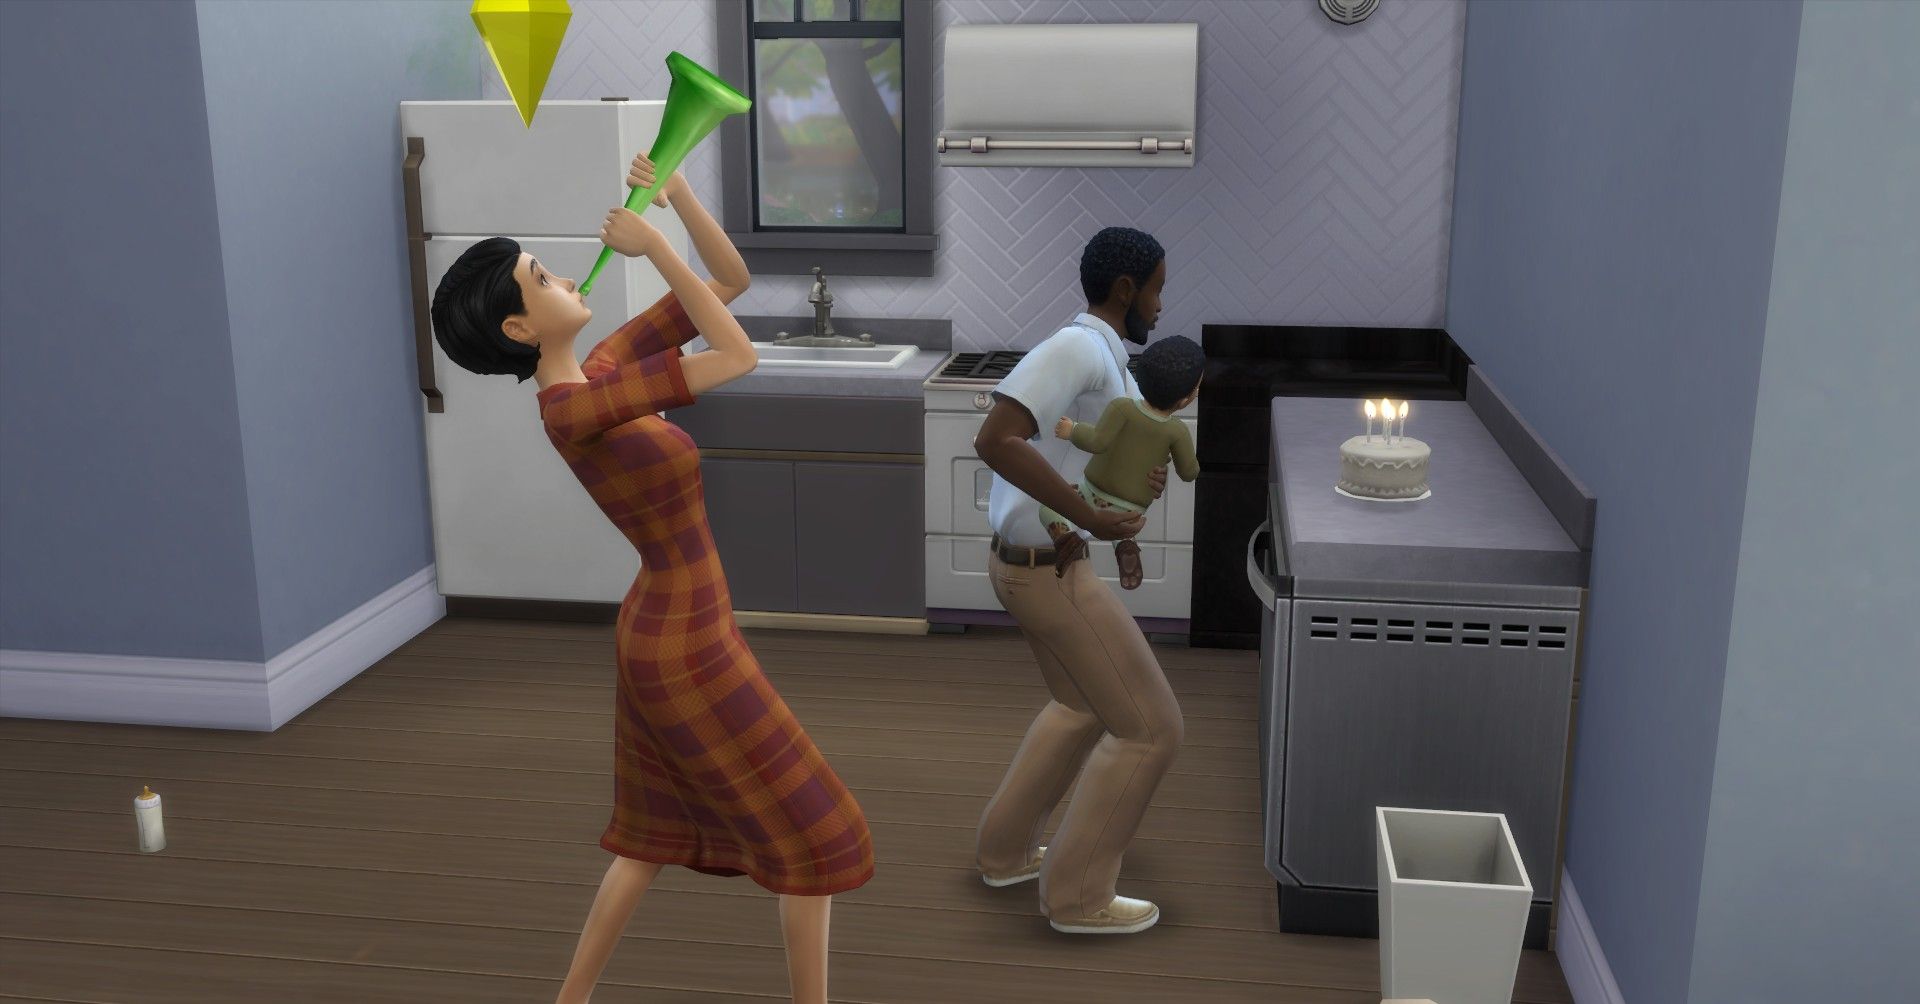 Sims 4 celebración de cumpleaños para un bebé, el padre sostiene al hijo para apagar las velas y la esposa toca un cuerno de celebración.